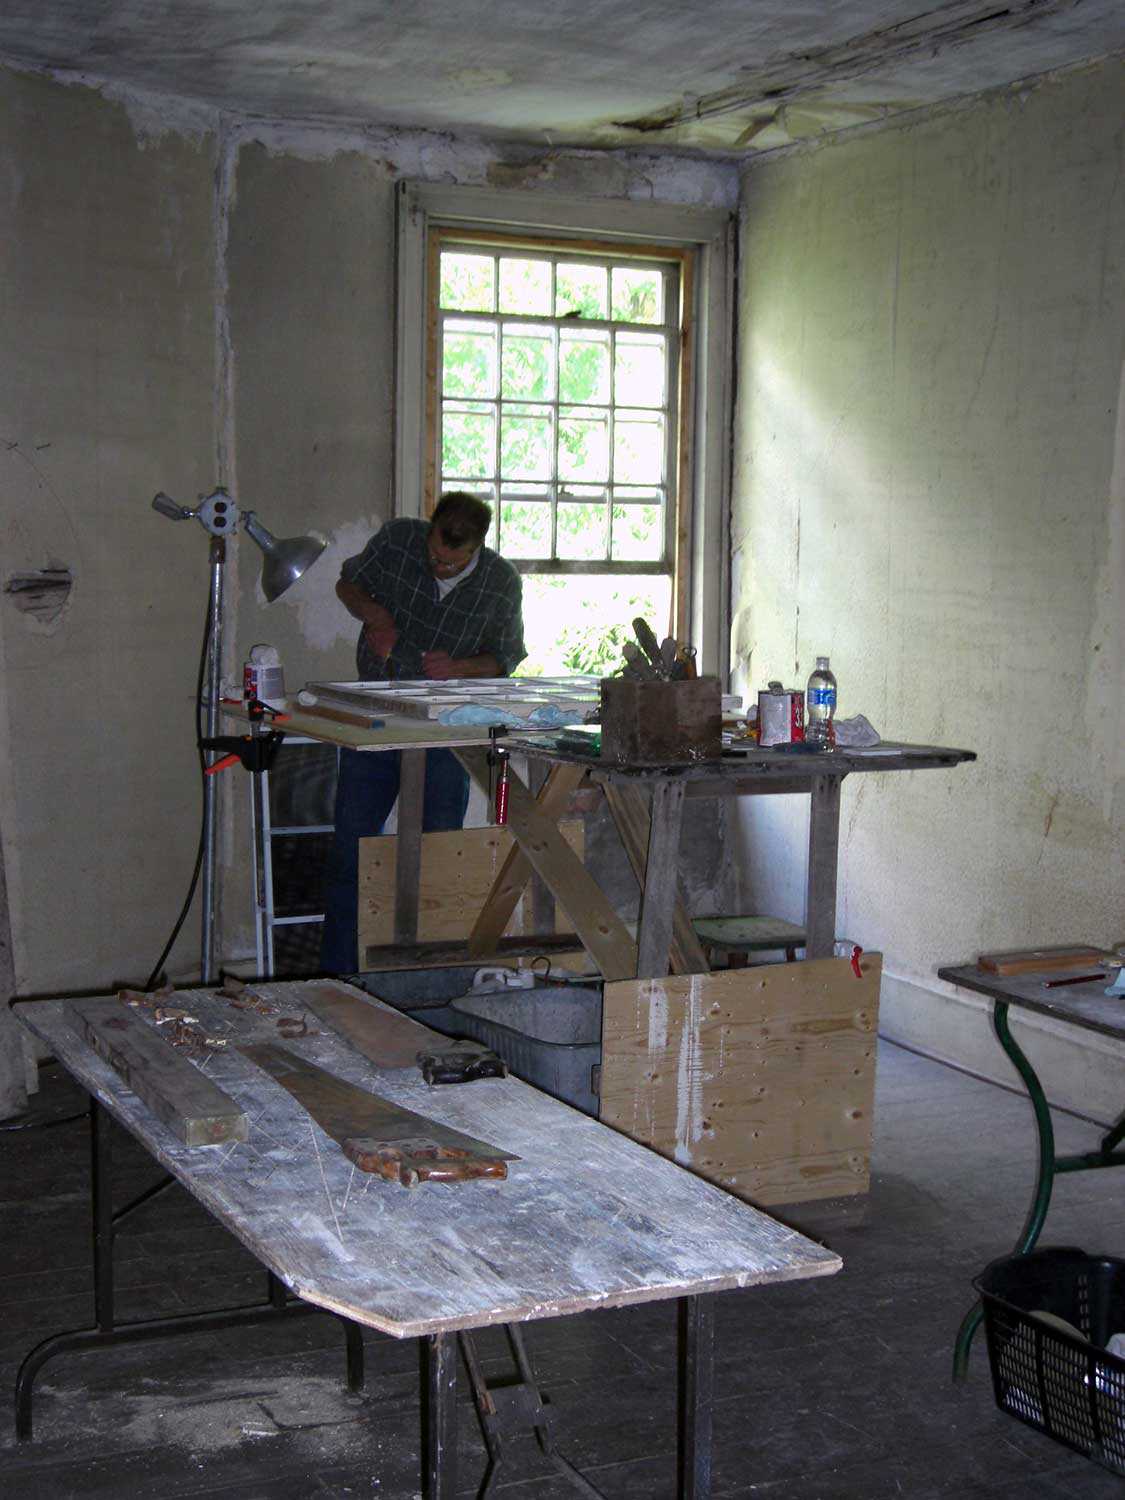 Réparation de fenêtres grâce à des méthodes de vitrage traditionnelles à la taverne historique Fryfogel (comté de Perth). La Fiducie détient une servitude protectrice du patrimoine sur la taverne Fryfogel.